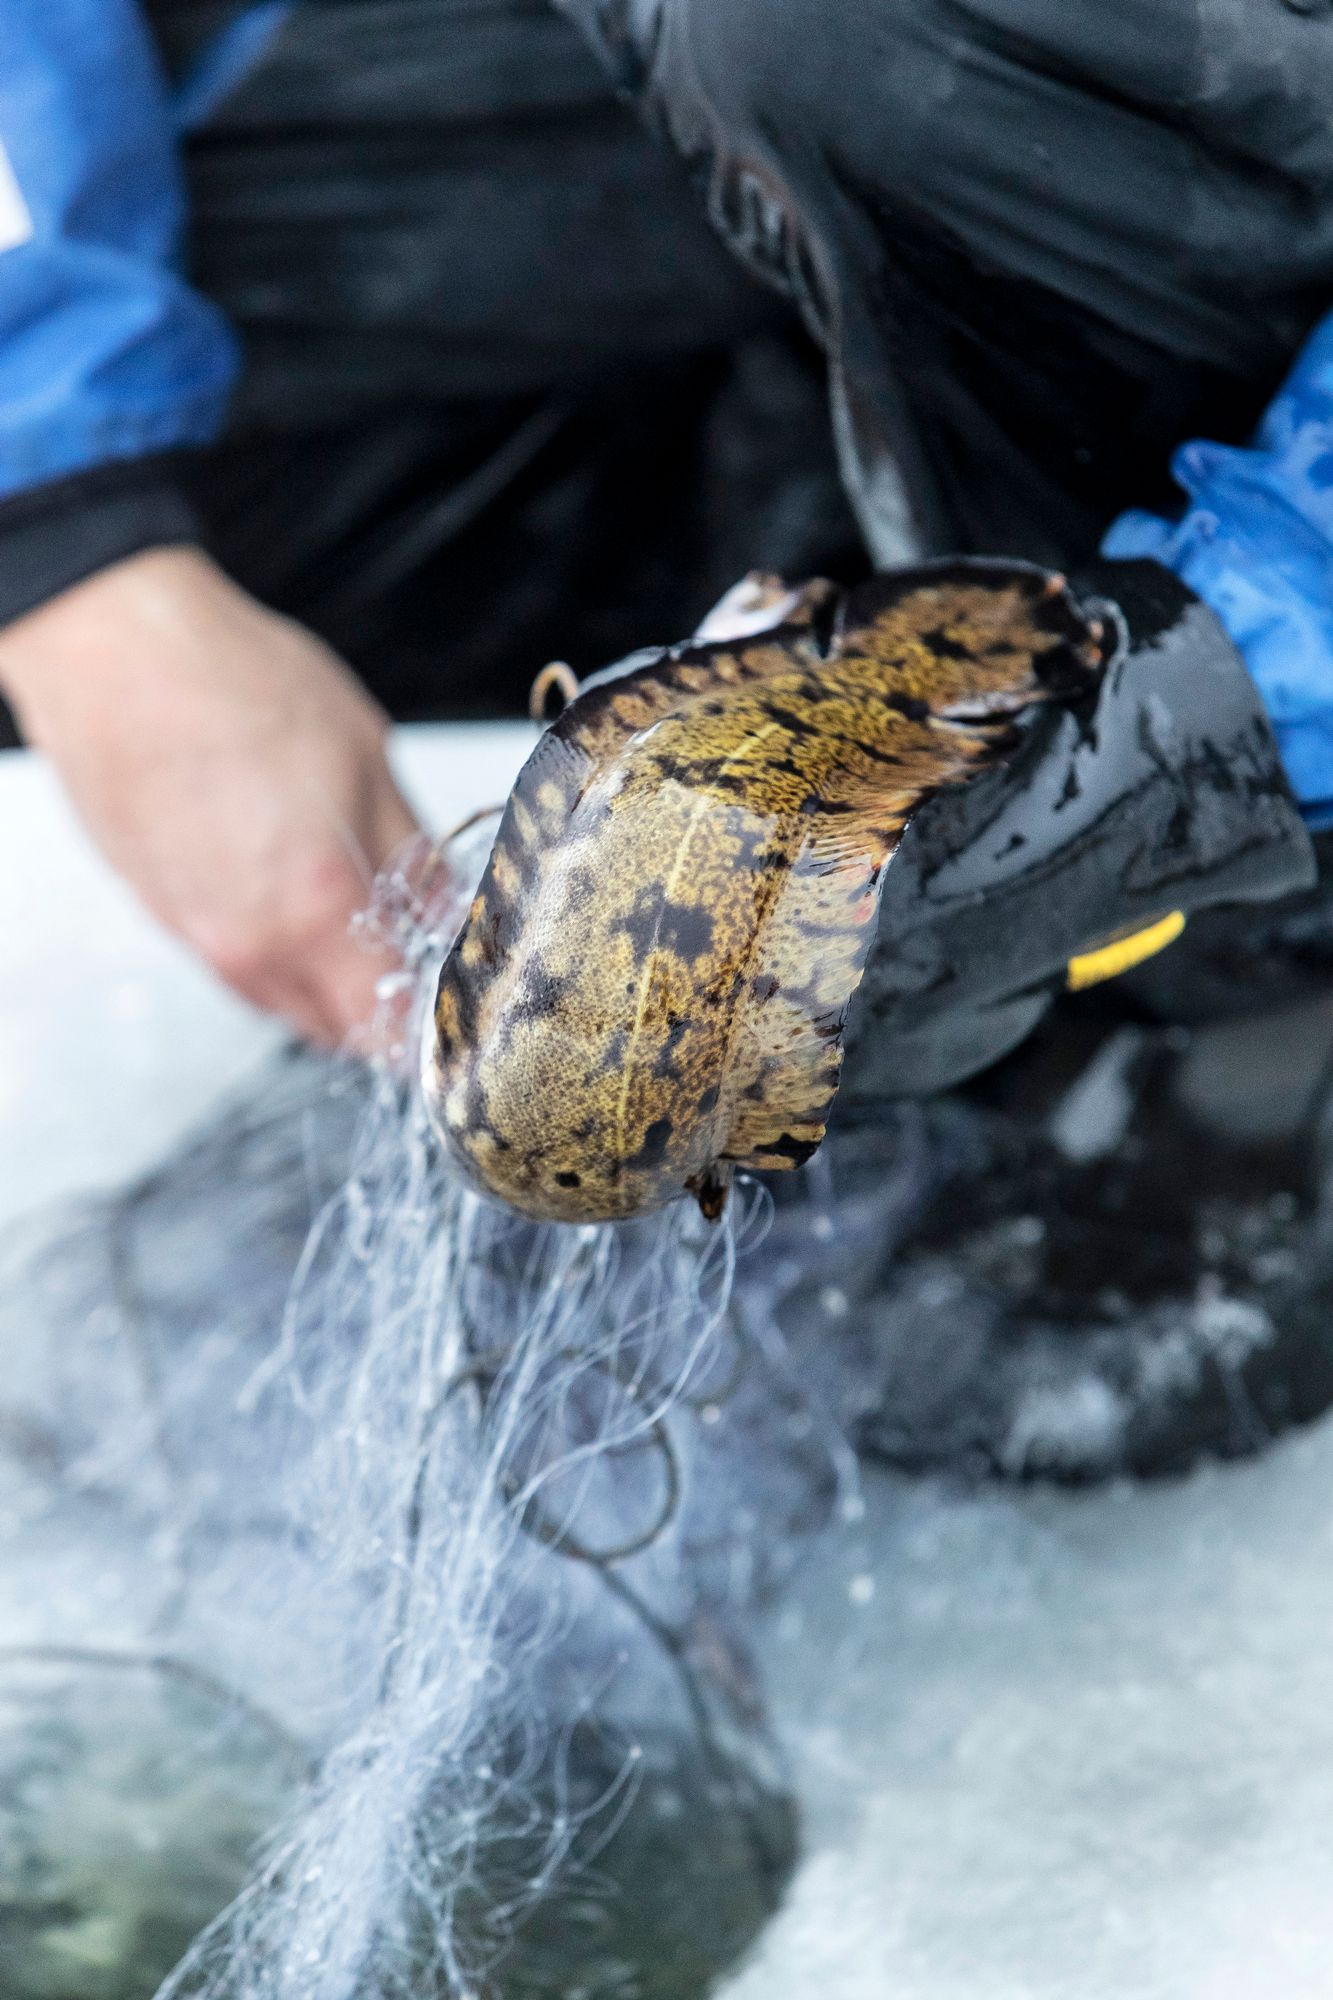 Made viihtyy viileissä muutaman asteen lämpöisissä vesissä. Kesällä vesien lämmetessä kala vetäytyy syvänteisiin, joten sen pyyntiaika on lyhyt. © Rami Marjamäki